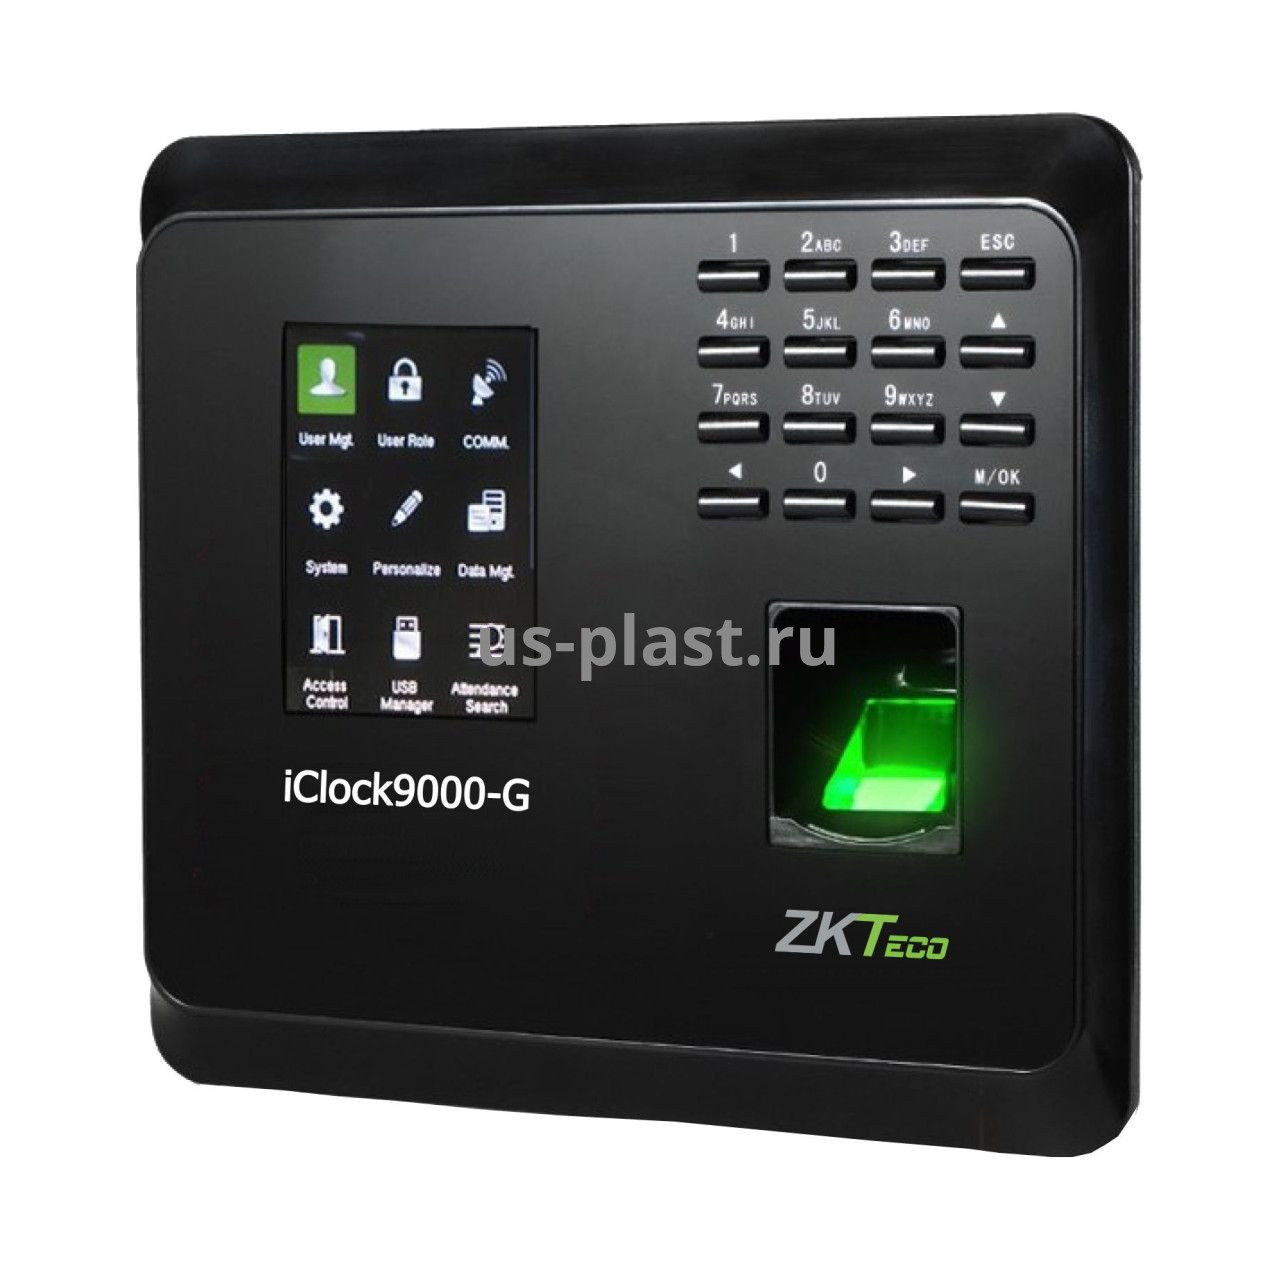 ZKTeco iClock9000-G [EM] Wi-Fi, биометрический терминал учета рабочего времени по отпечатку пальца и карте EM / GPRS